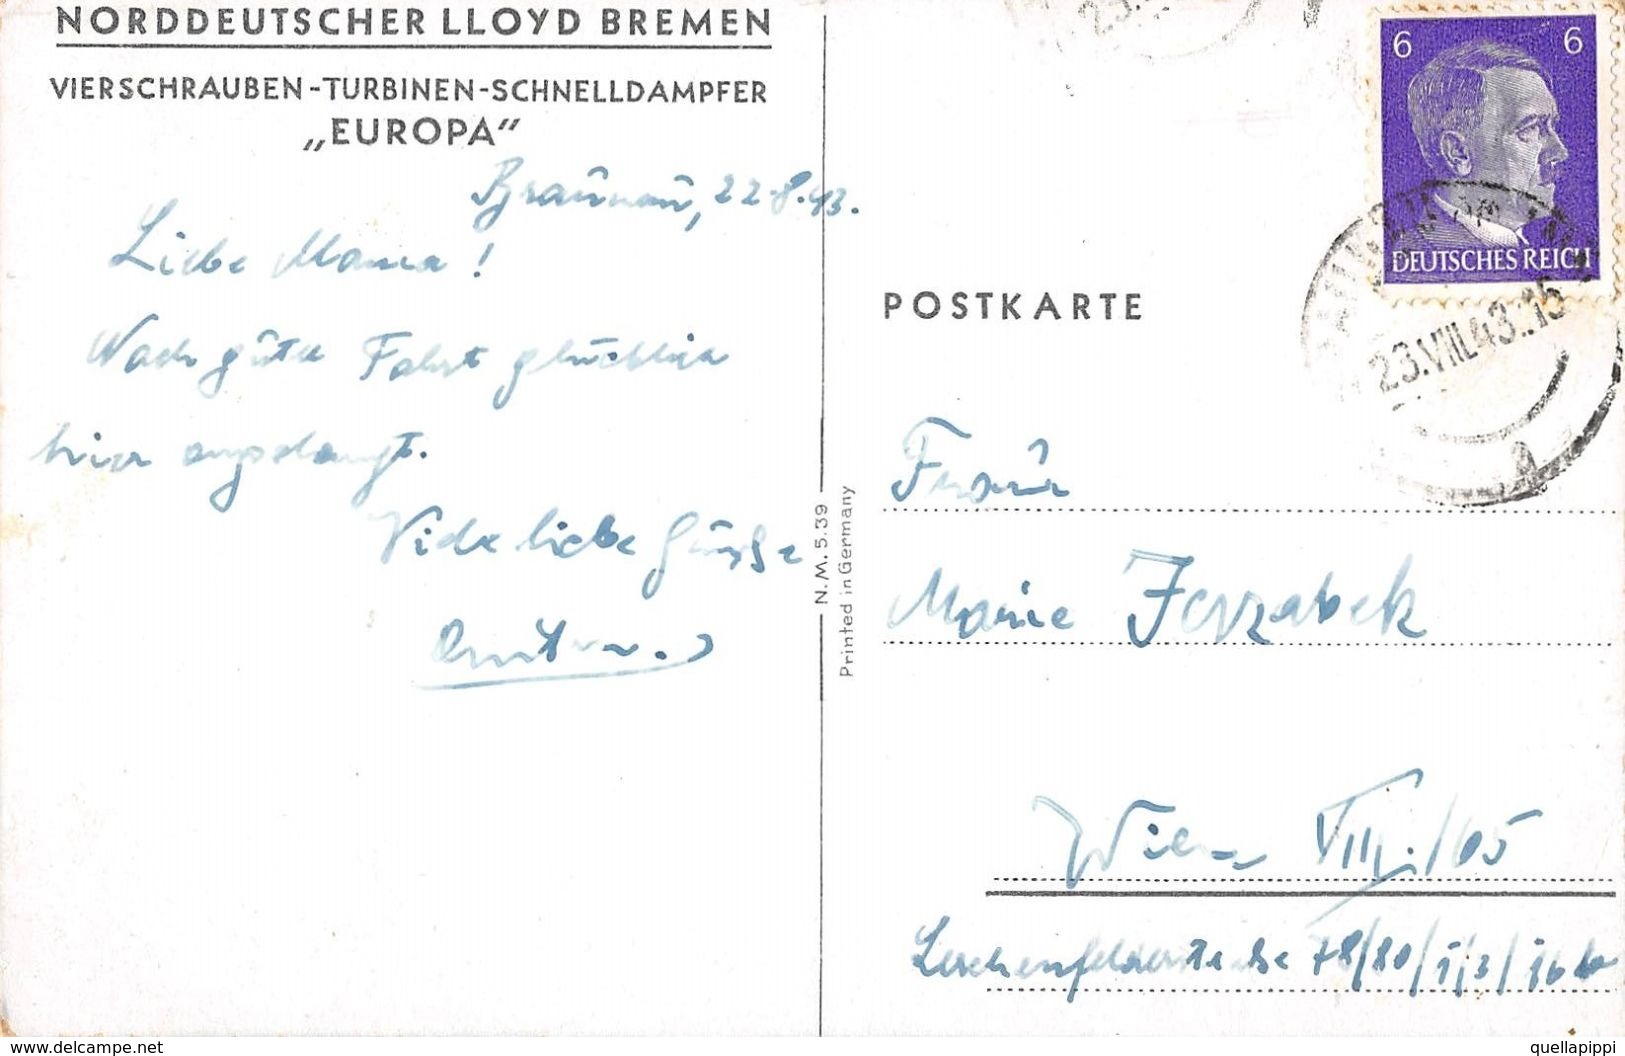 07196 "NORDDEUTSCHER LLOYD BREM-VIERSCHRAUBEN-TURBINEN-SCHNELDAMPFER-EUROPA" CART SPED 1943 BOLLO HITLER - Banks